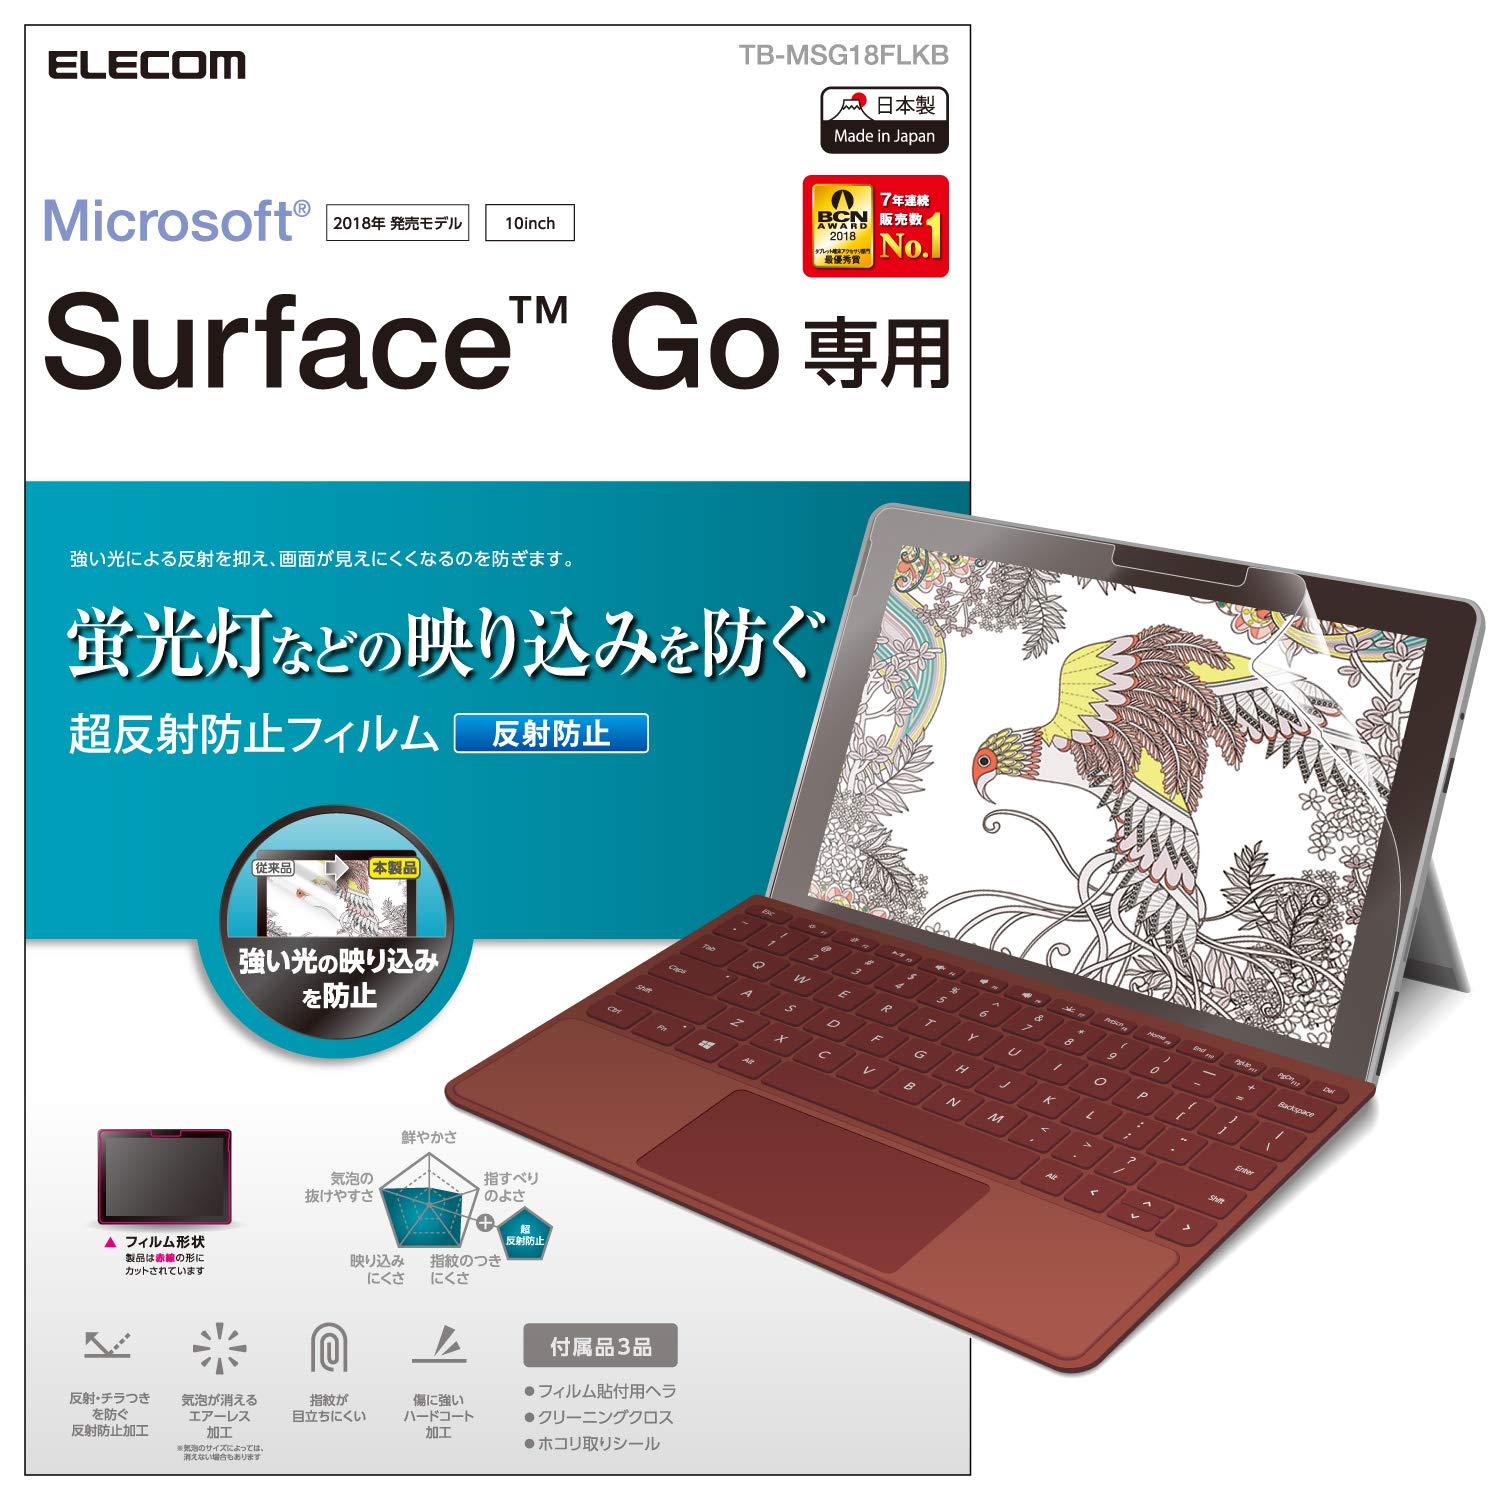 RAGR Surface Go tB ủf荞݂h˖h~ CAڗȂȂGA[XH wh~ y{z TB-MSG18FLKB